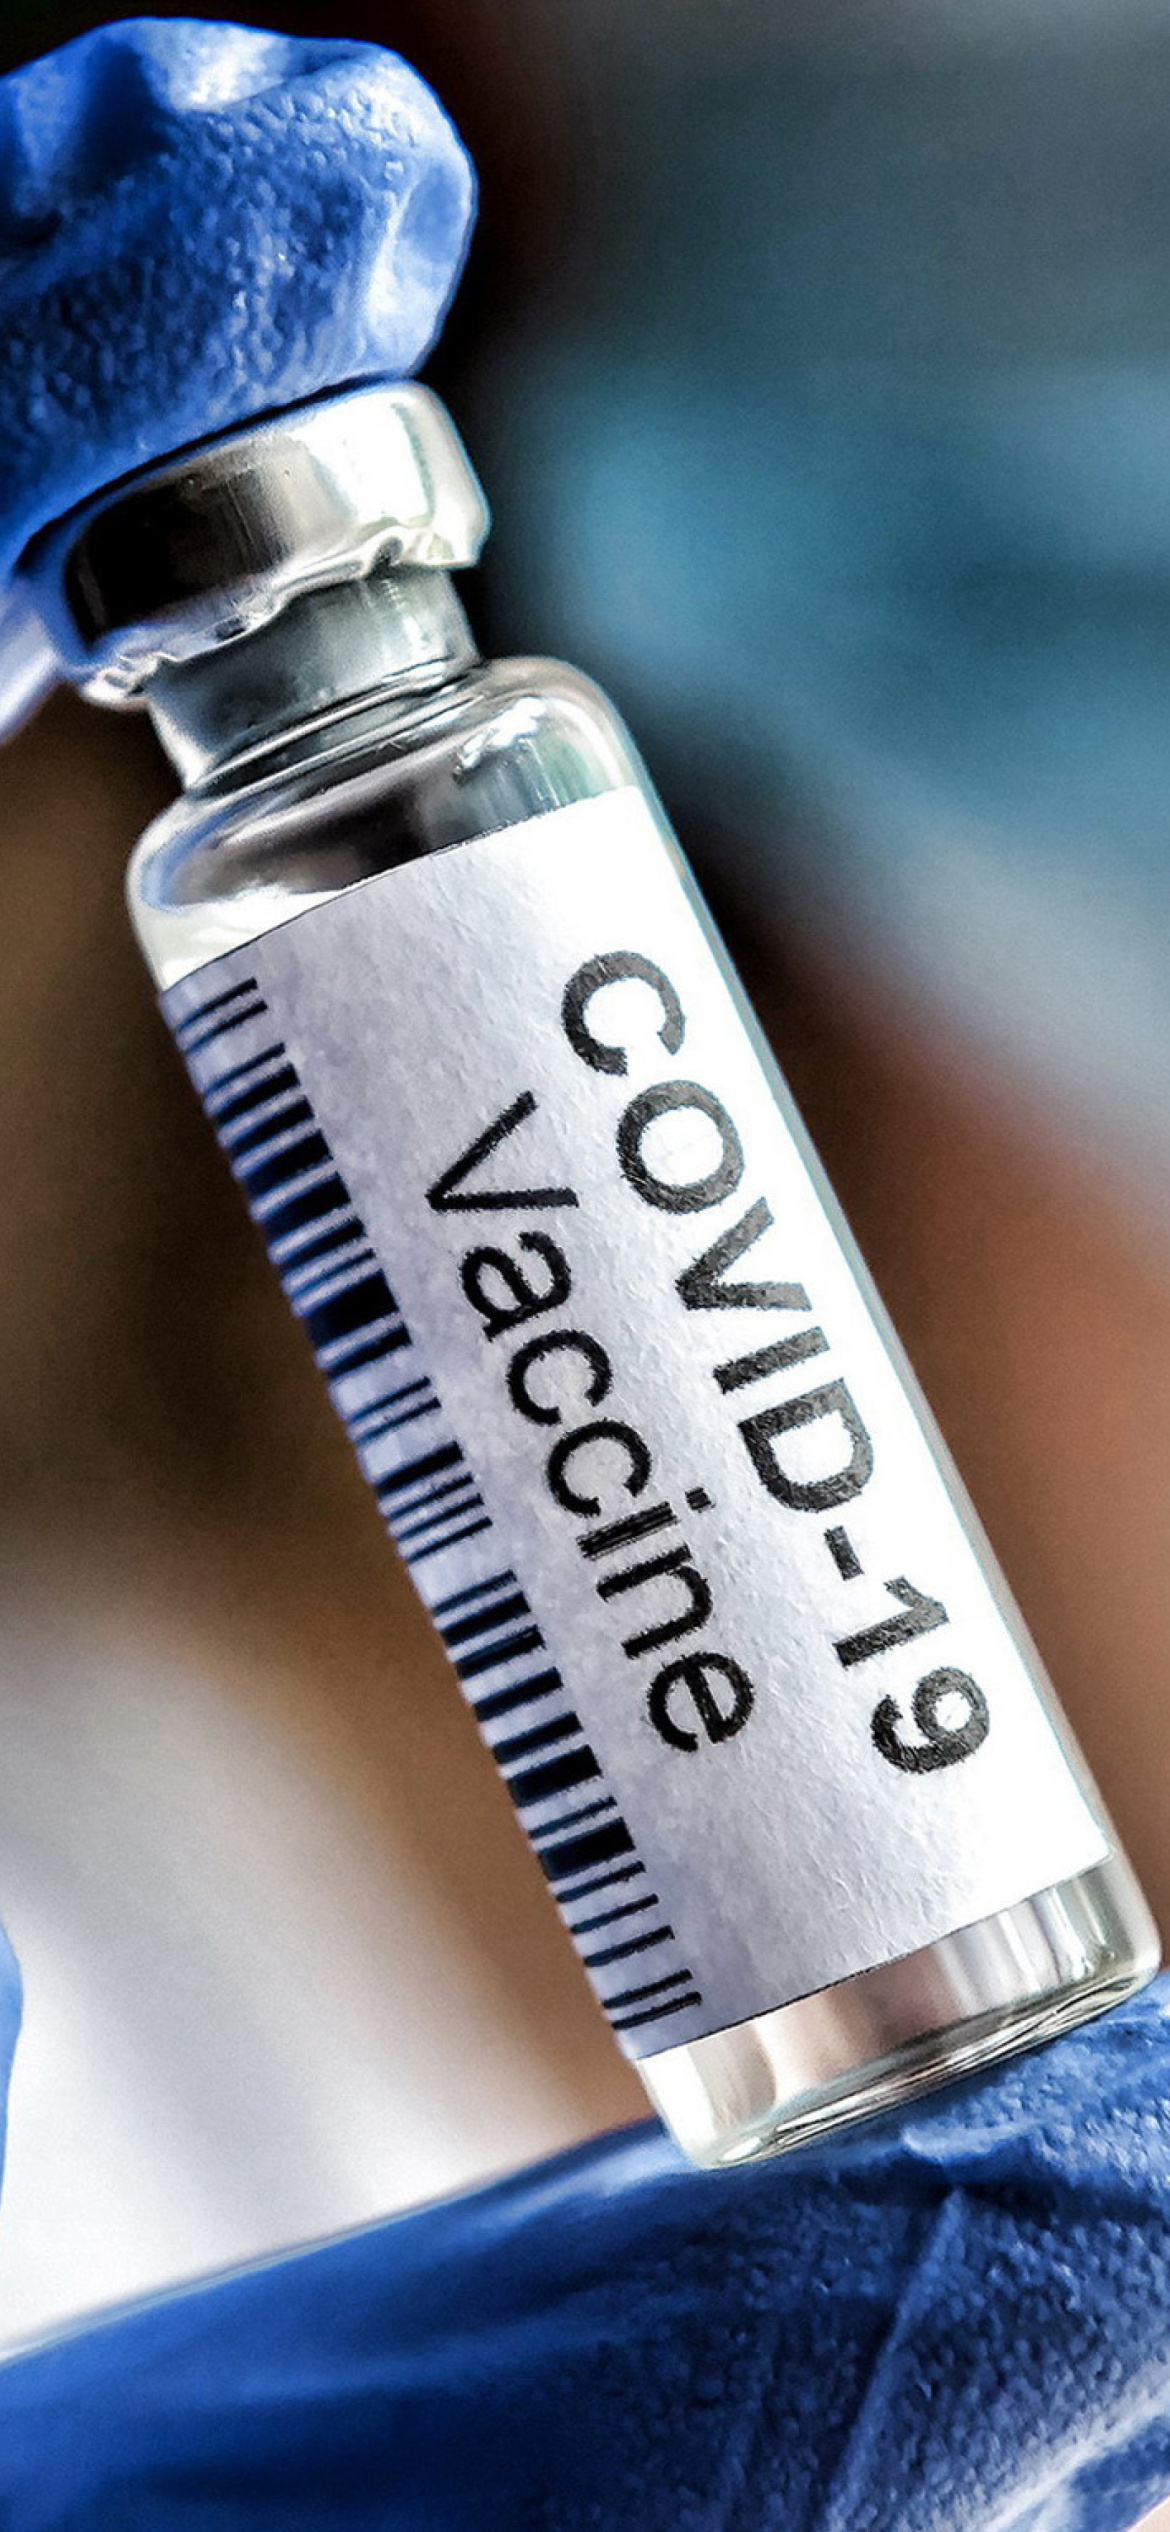 Covid Vaccine wallpaper 1170x2532